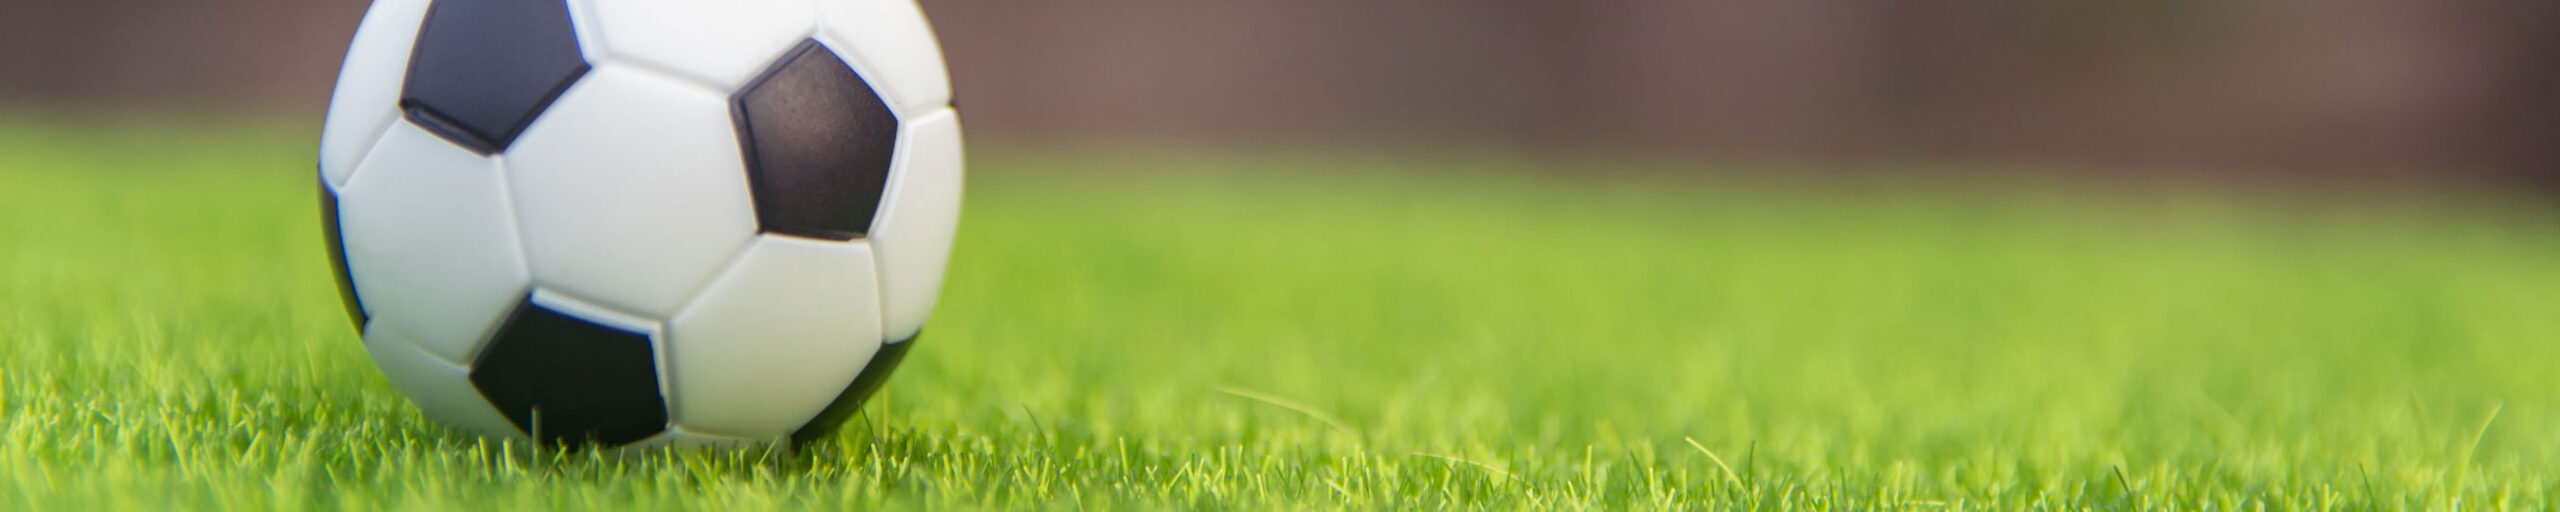 Detailfoto von einem Fußball auf grünem Rasen